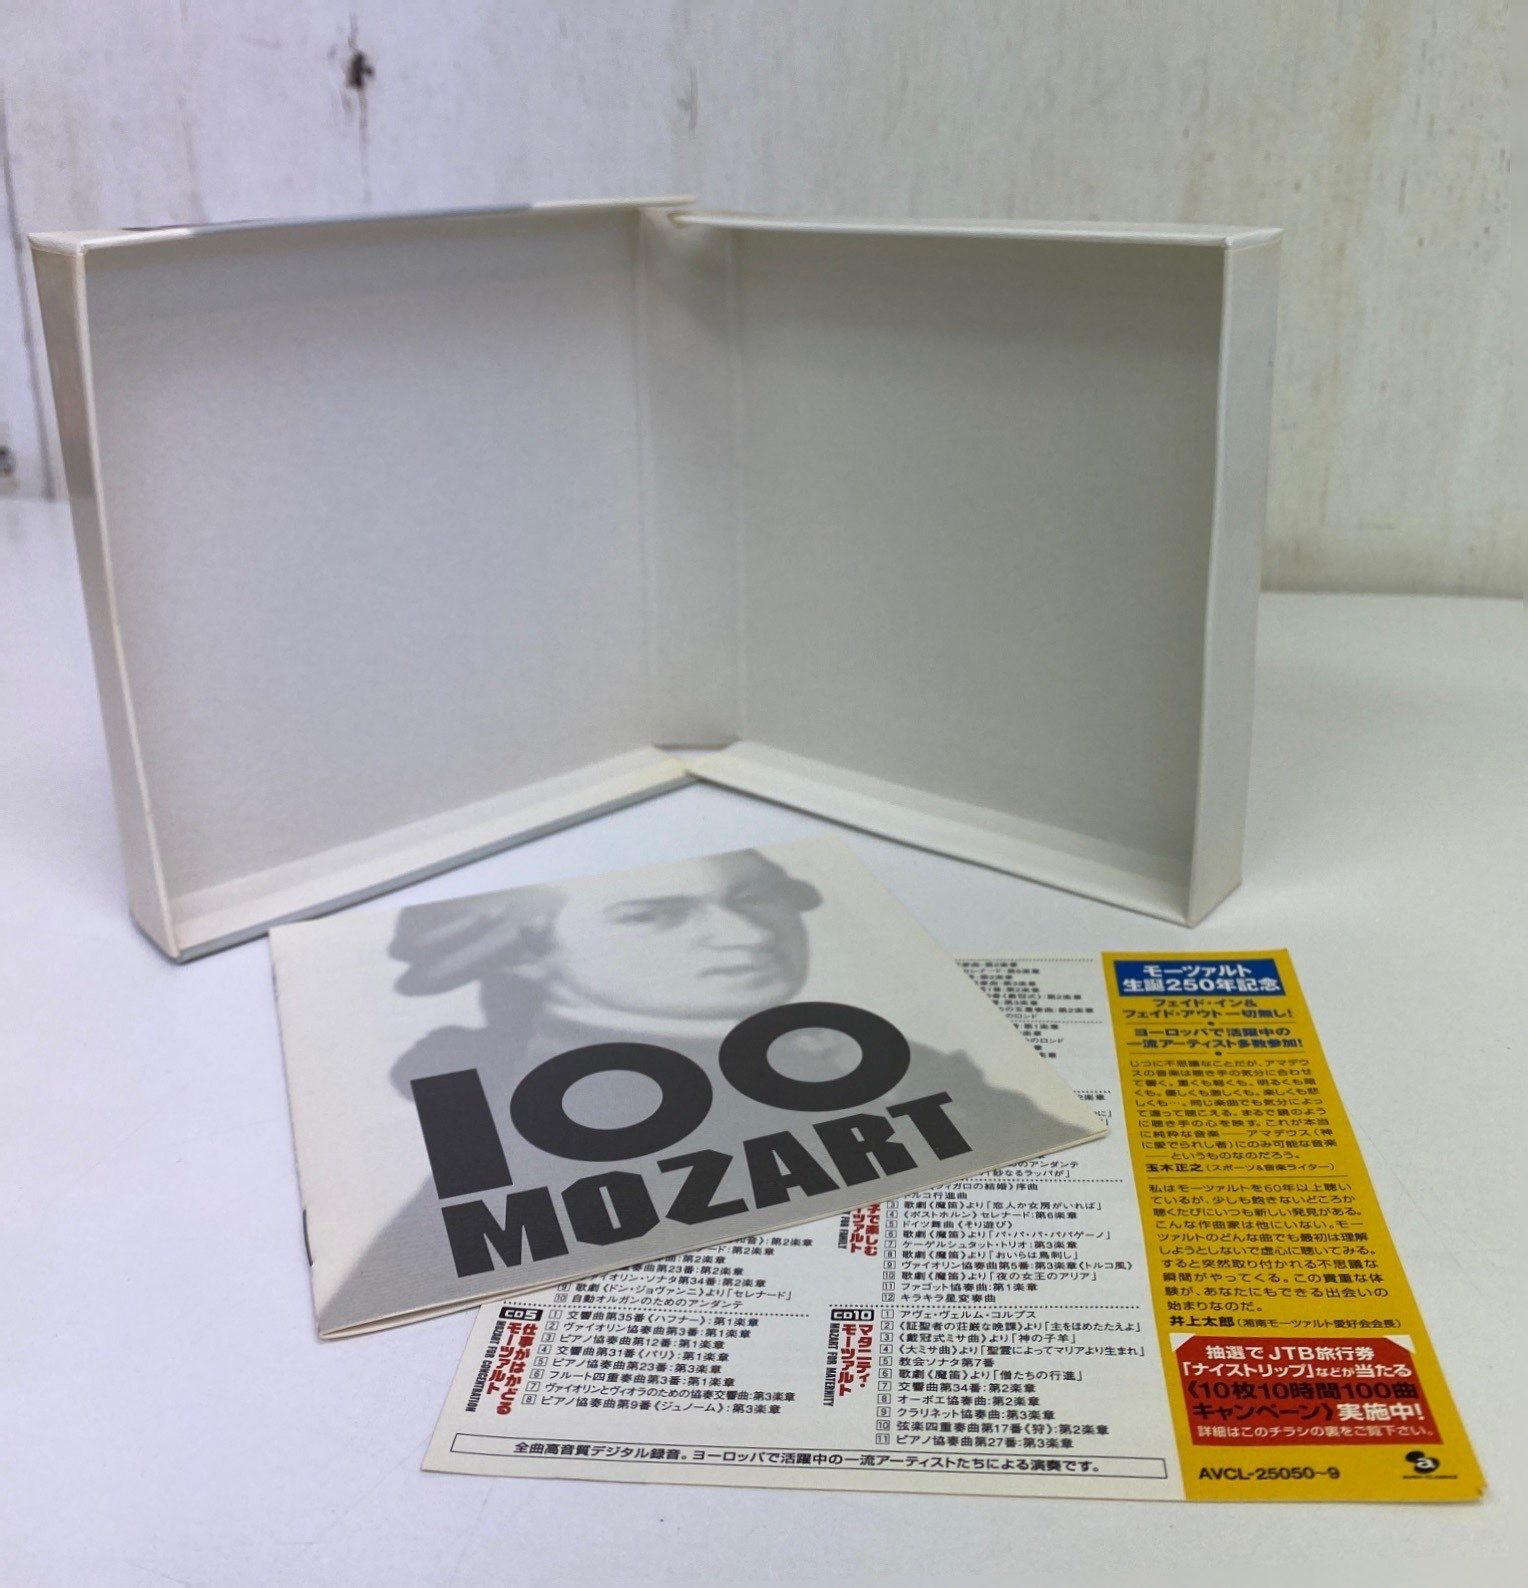 100曲 モーツァルト」「100曲 モーツァルト Ⅱ」（CD10枚組）✕ 2